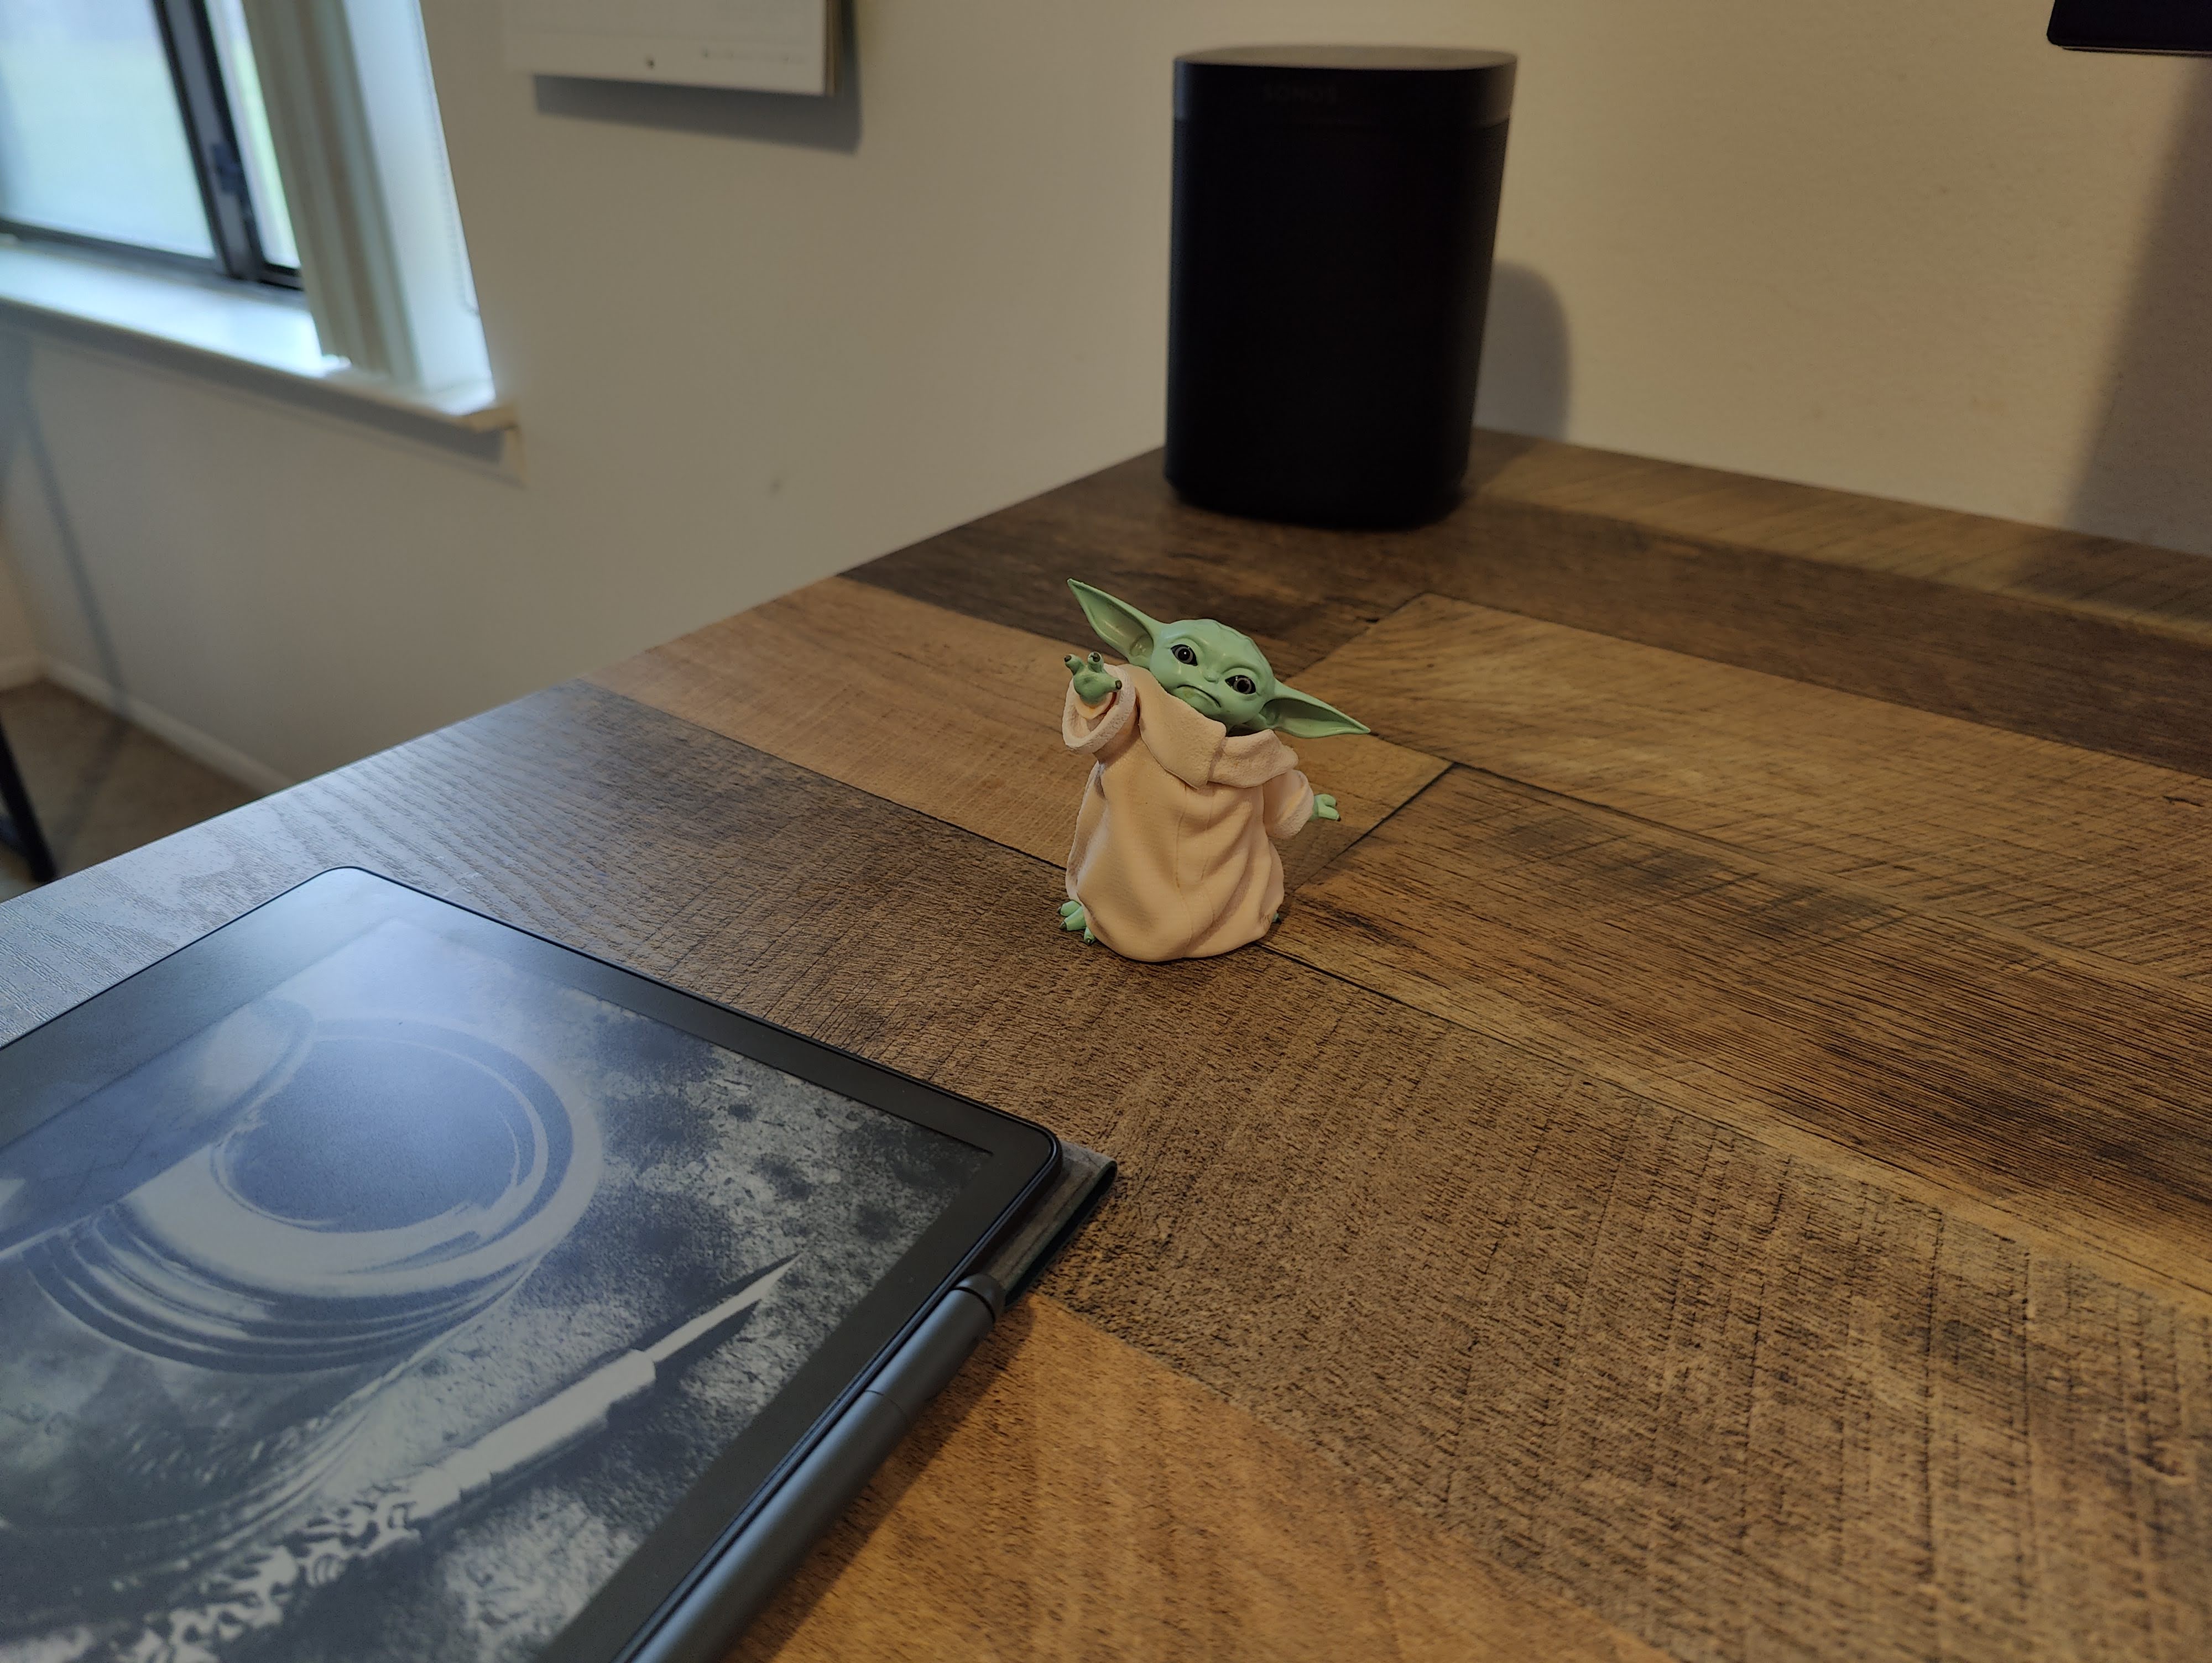 Kamerabeispiel vom OnePlus 10 Pro.  Es ist ein Foto einer kleinen Baby-Yoda-Figur auf einem Schreibtisch.